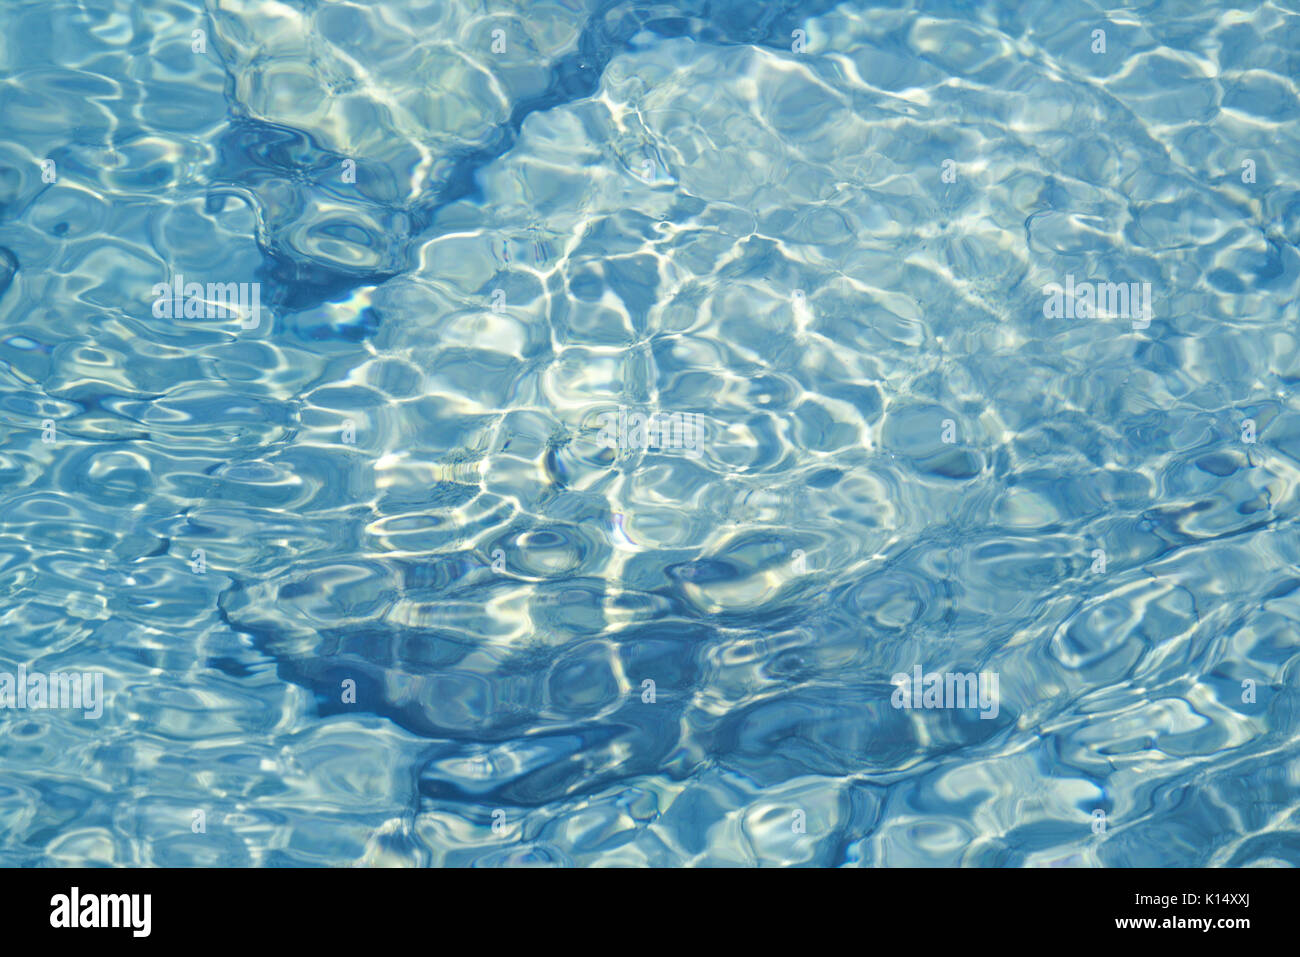 Flachwasser über felsigen Untergrund mit Reflexionen und kleinen plätschernden Wellen Stockfoto